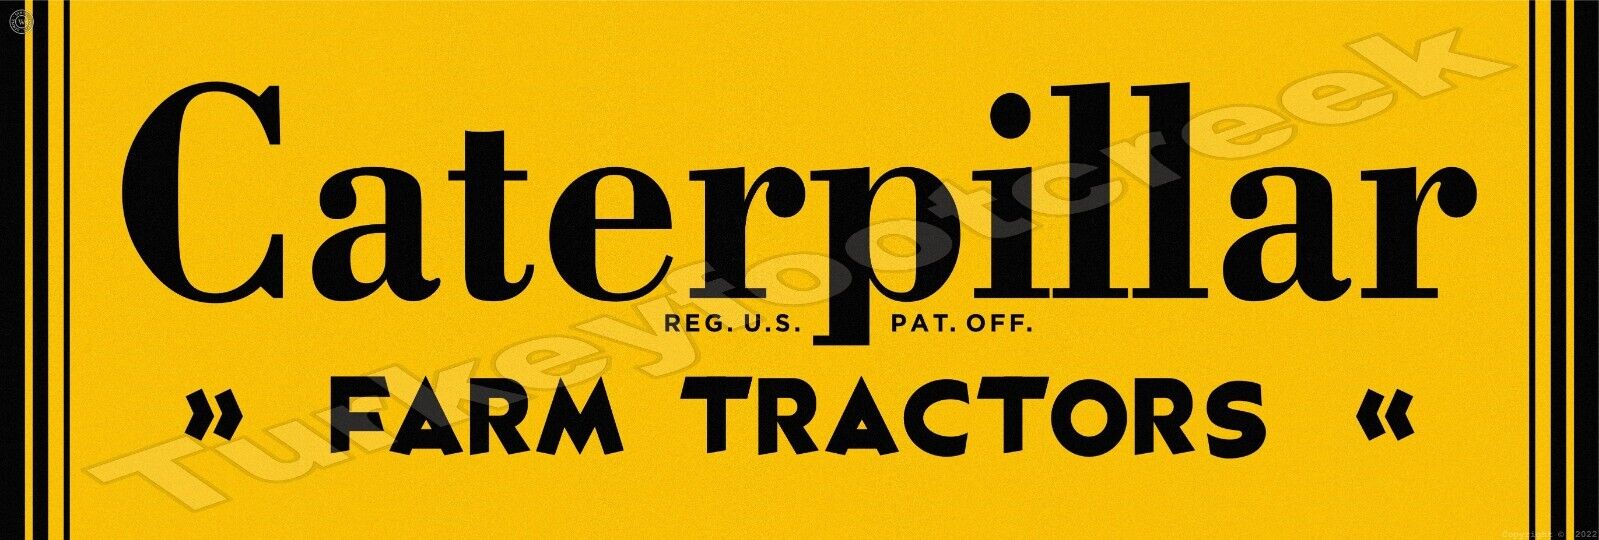 Caterpillar Farm Tractors 6\